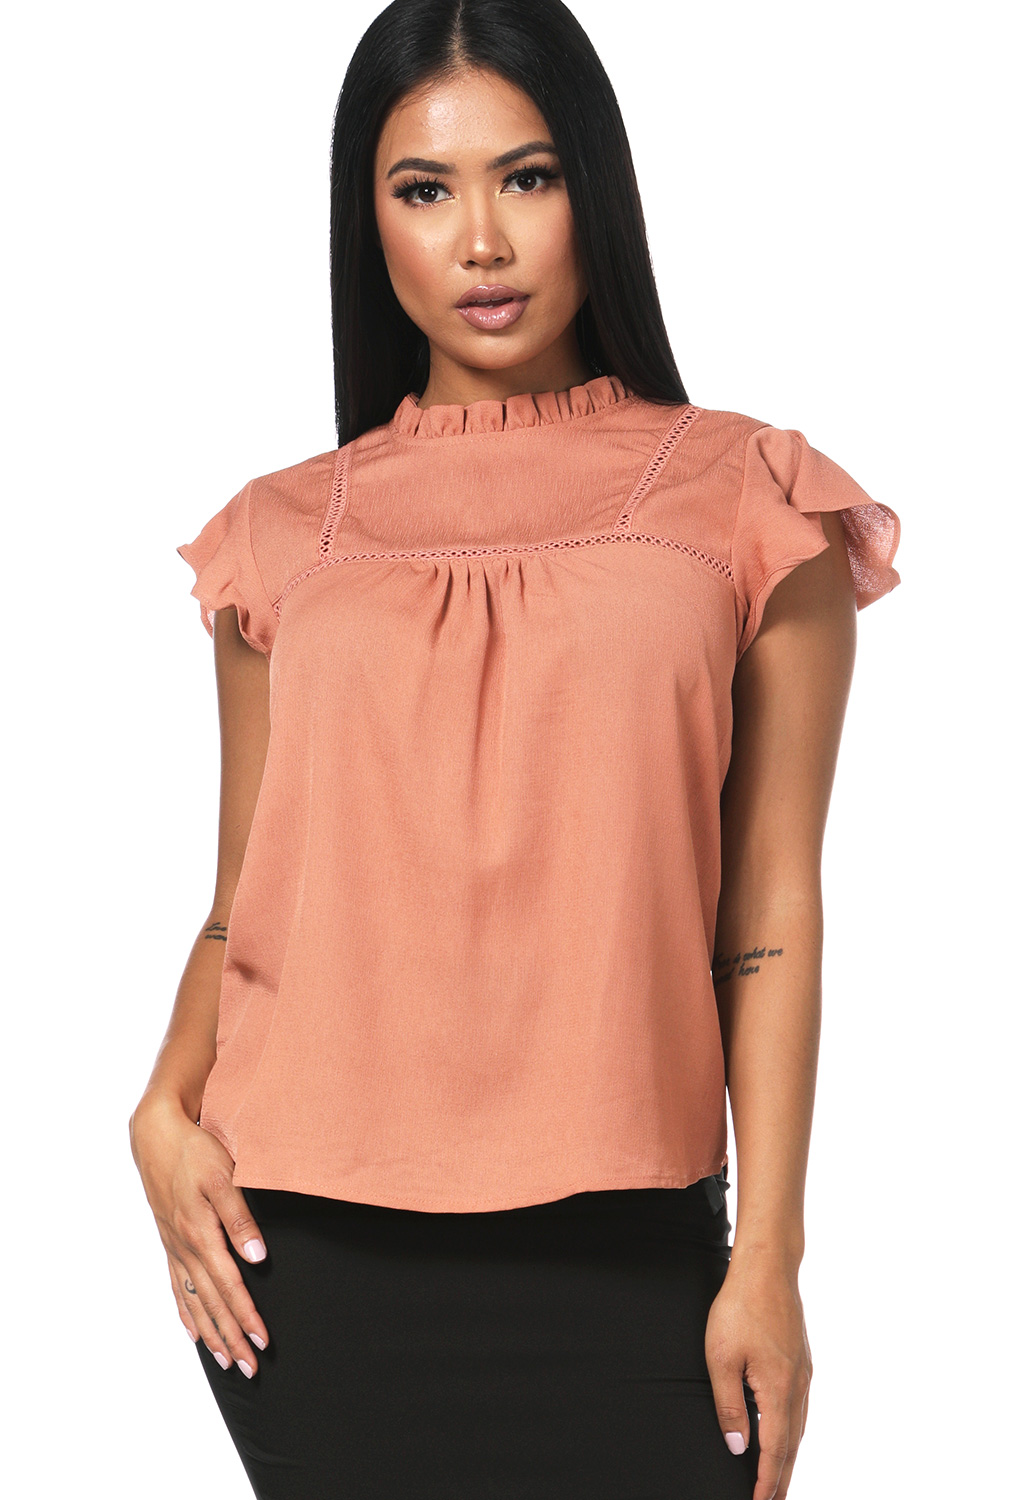 Ruffle Detail Dressy Top | Shop Blouses & Shirts at Papaya Clothing